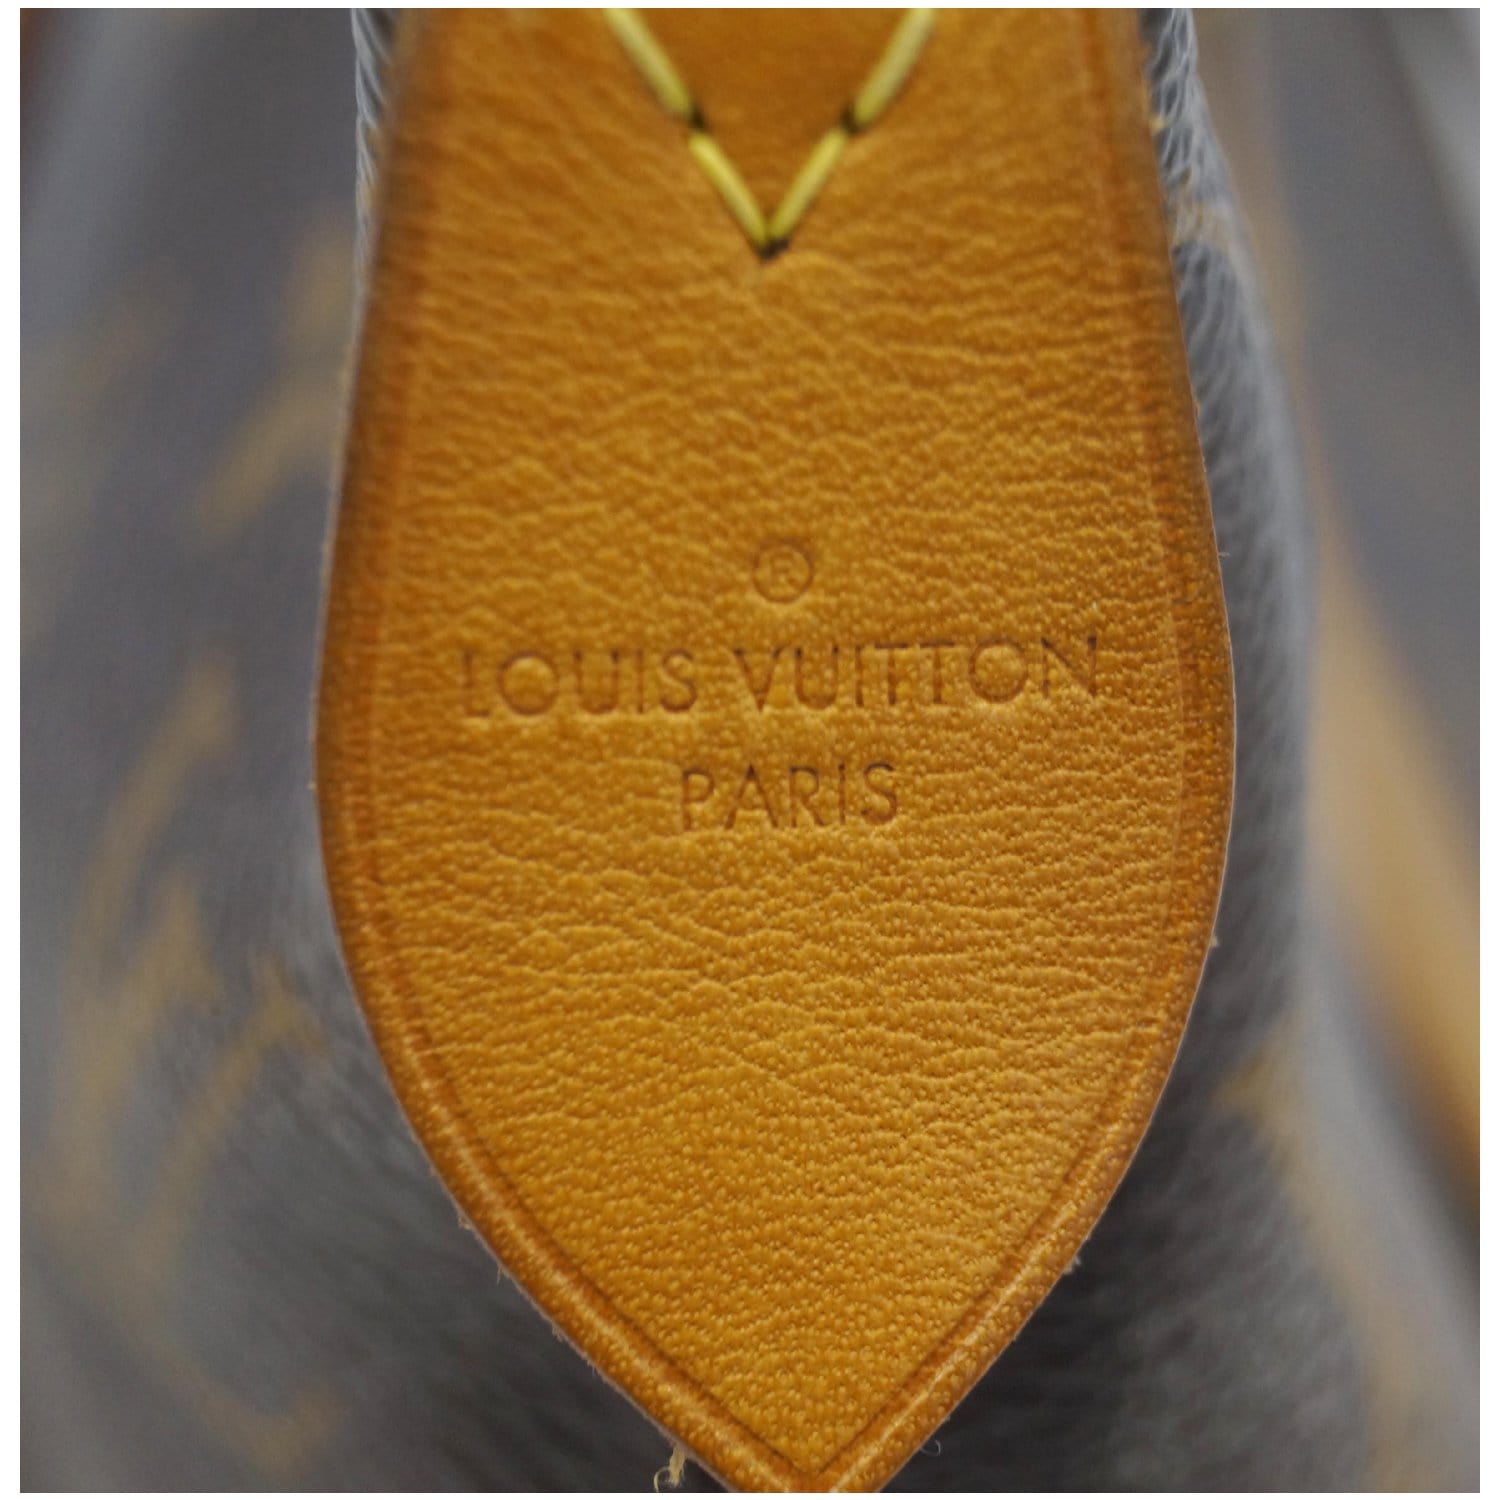 Louis Vuitton Monogram Canvas Iena PM QJBCNP1Y0F054